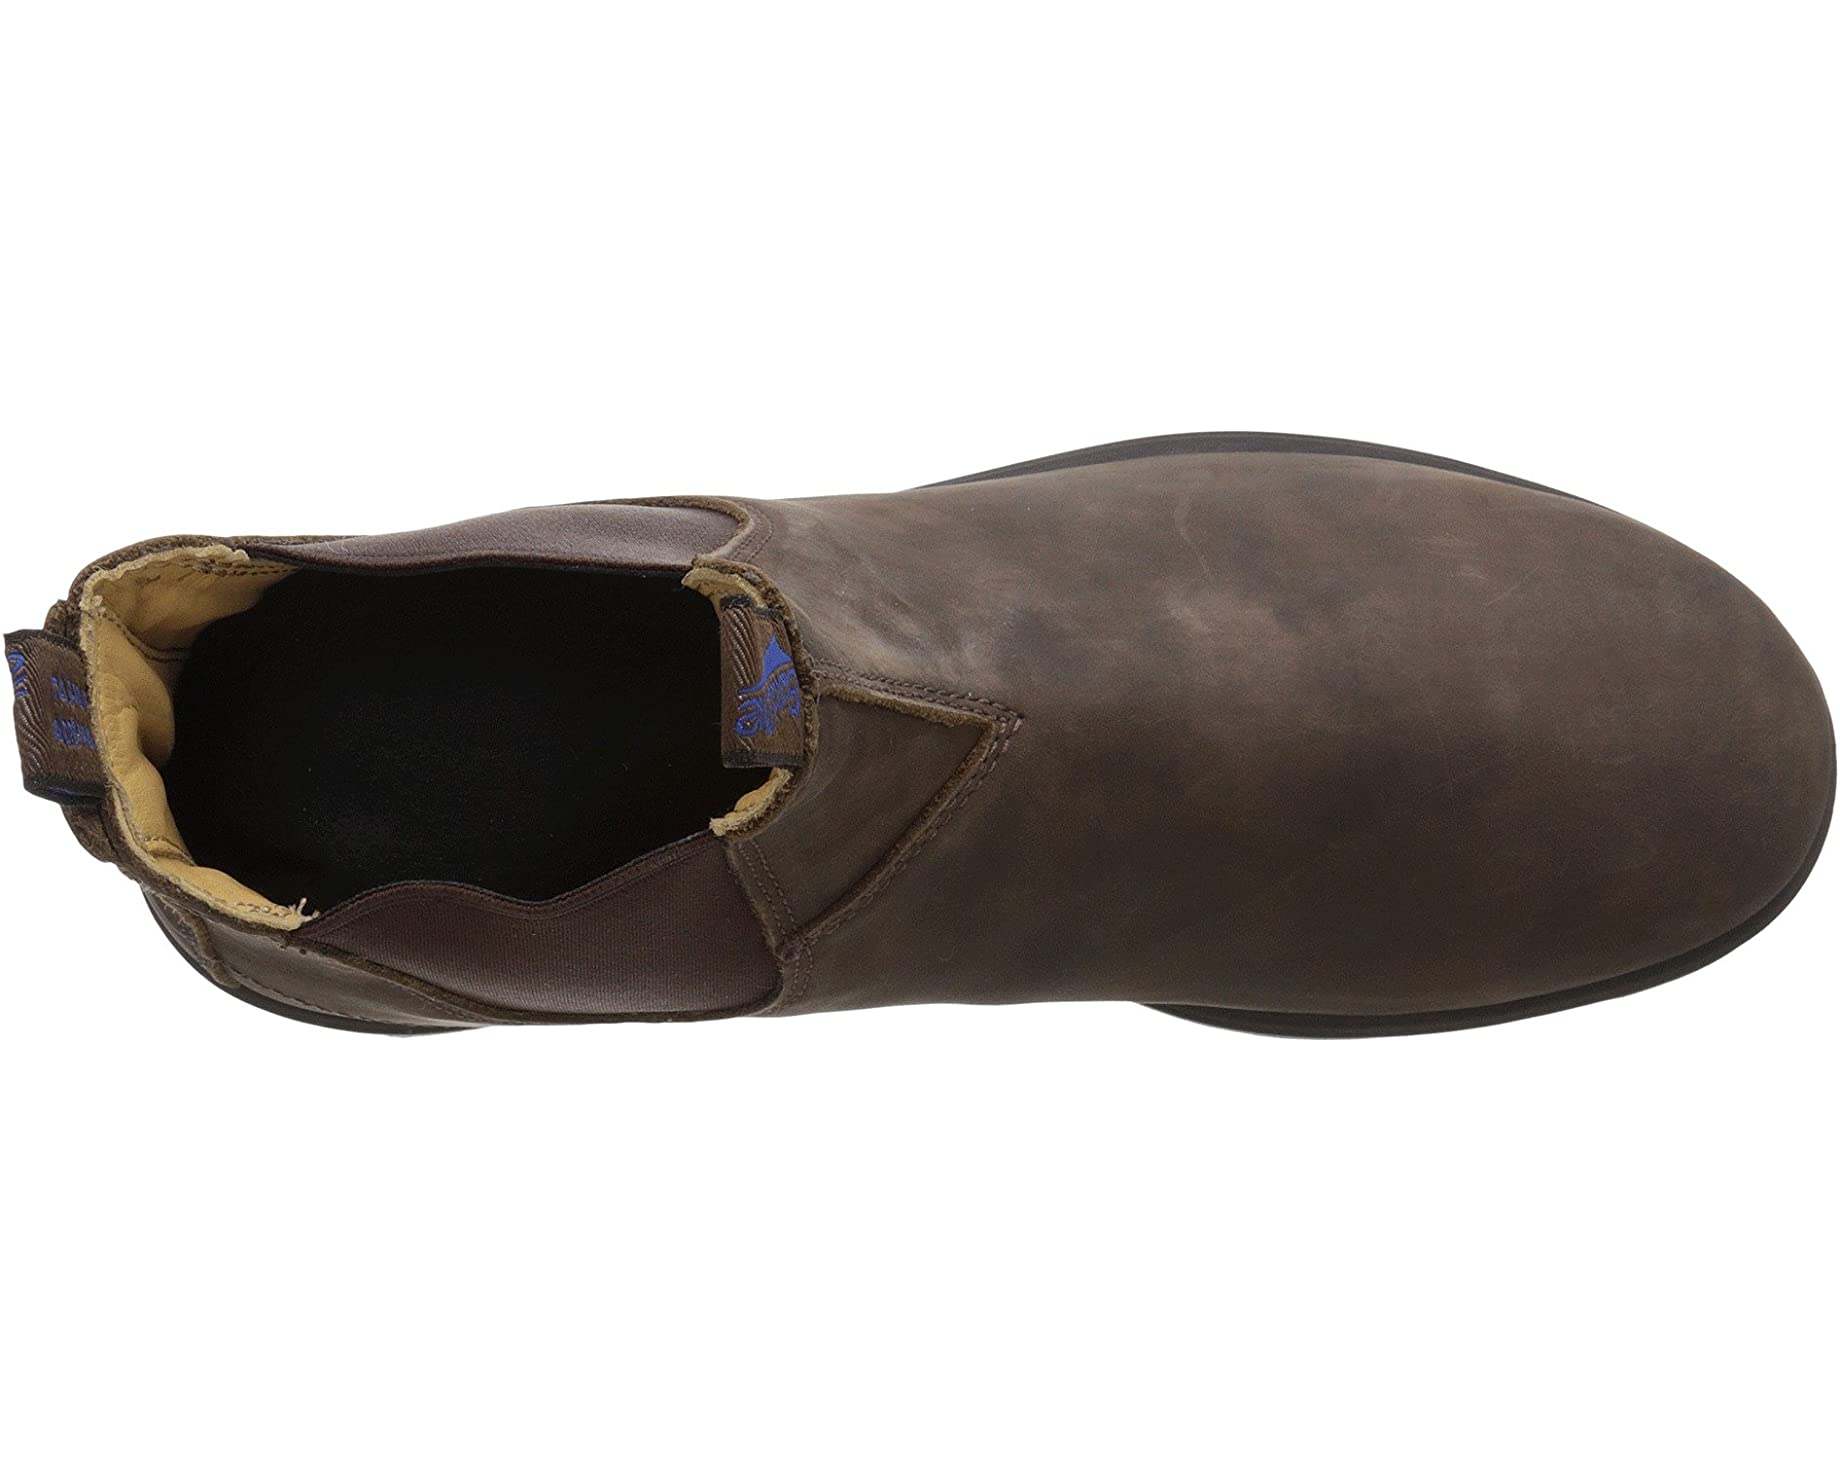 Ботинки 584 Thermal Chelsea Boots Blundstone, коричневый ботинки career dress chelsea aravon коричневый